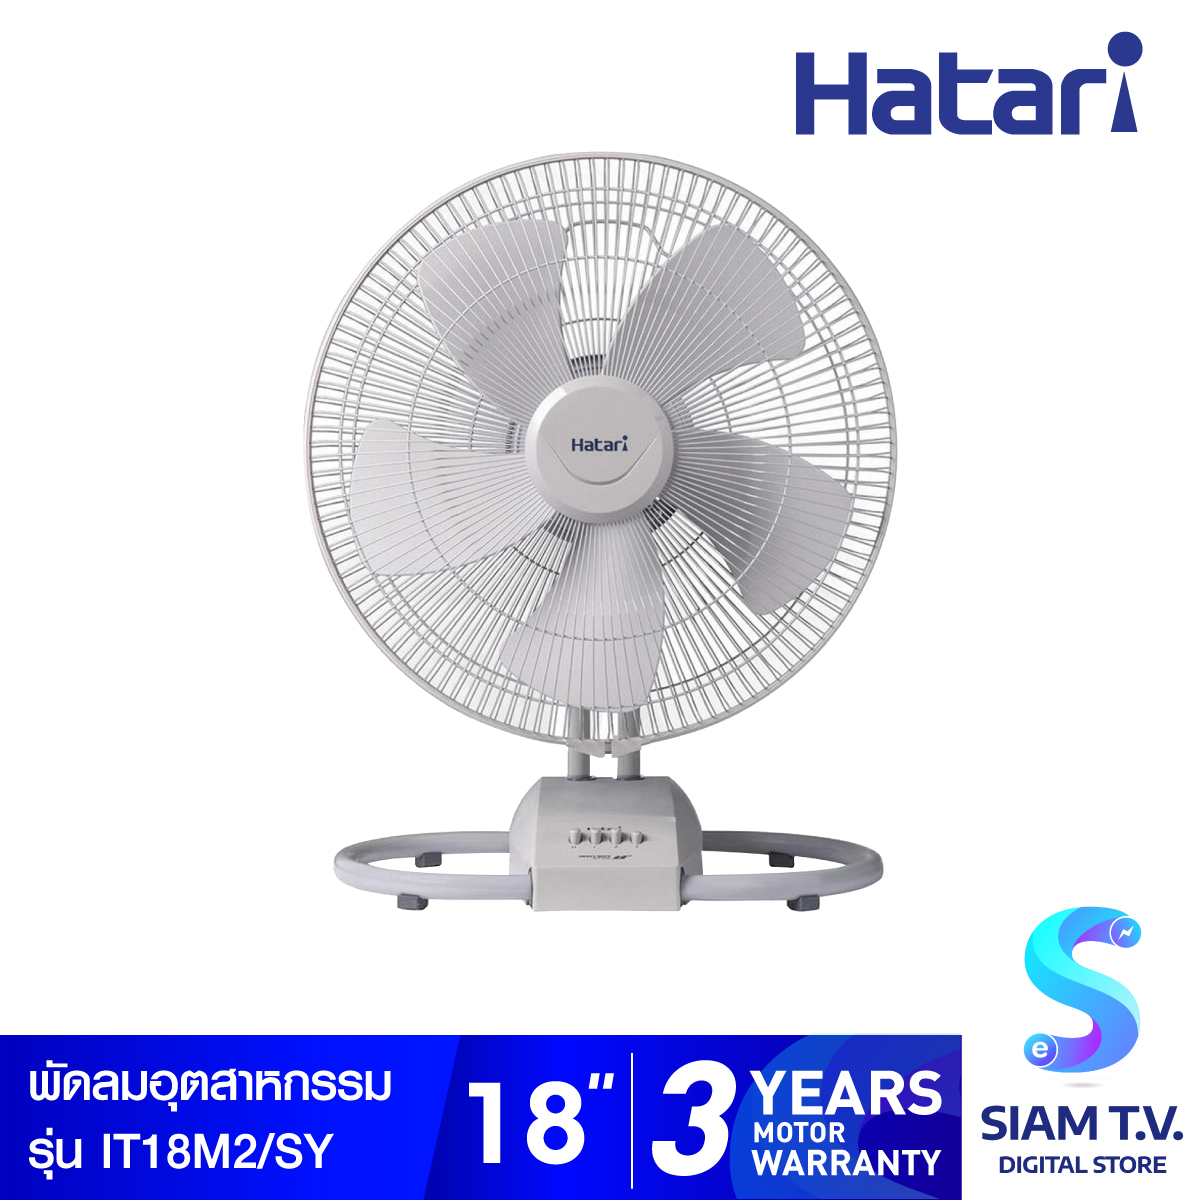 Hatari พัดลมอุตสาหกรรม 18 นิ้ว รุ่น IT18M2 โดย สยามทีวี by Siam T.V.